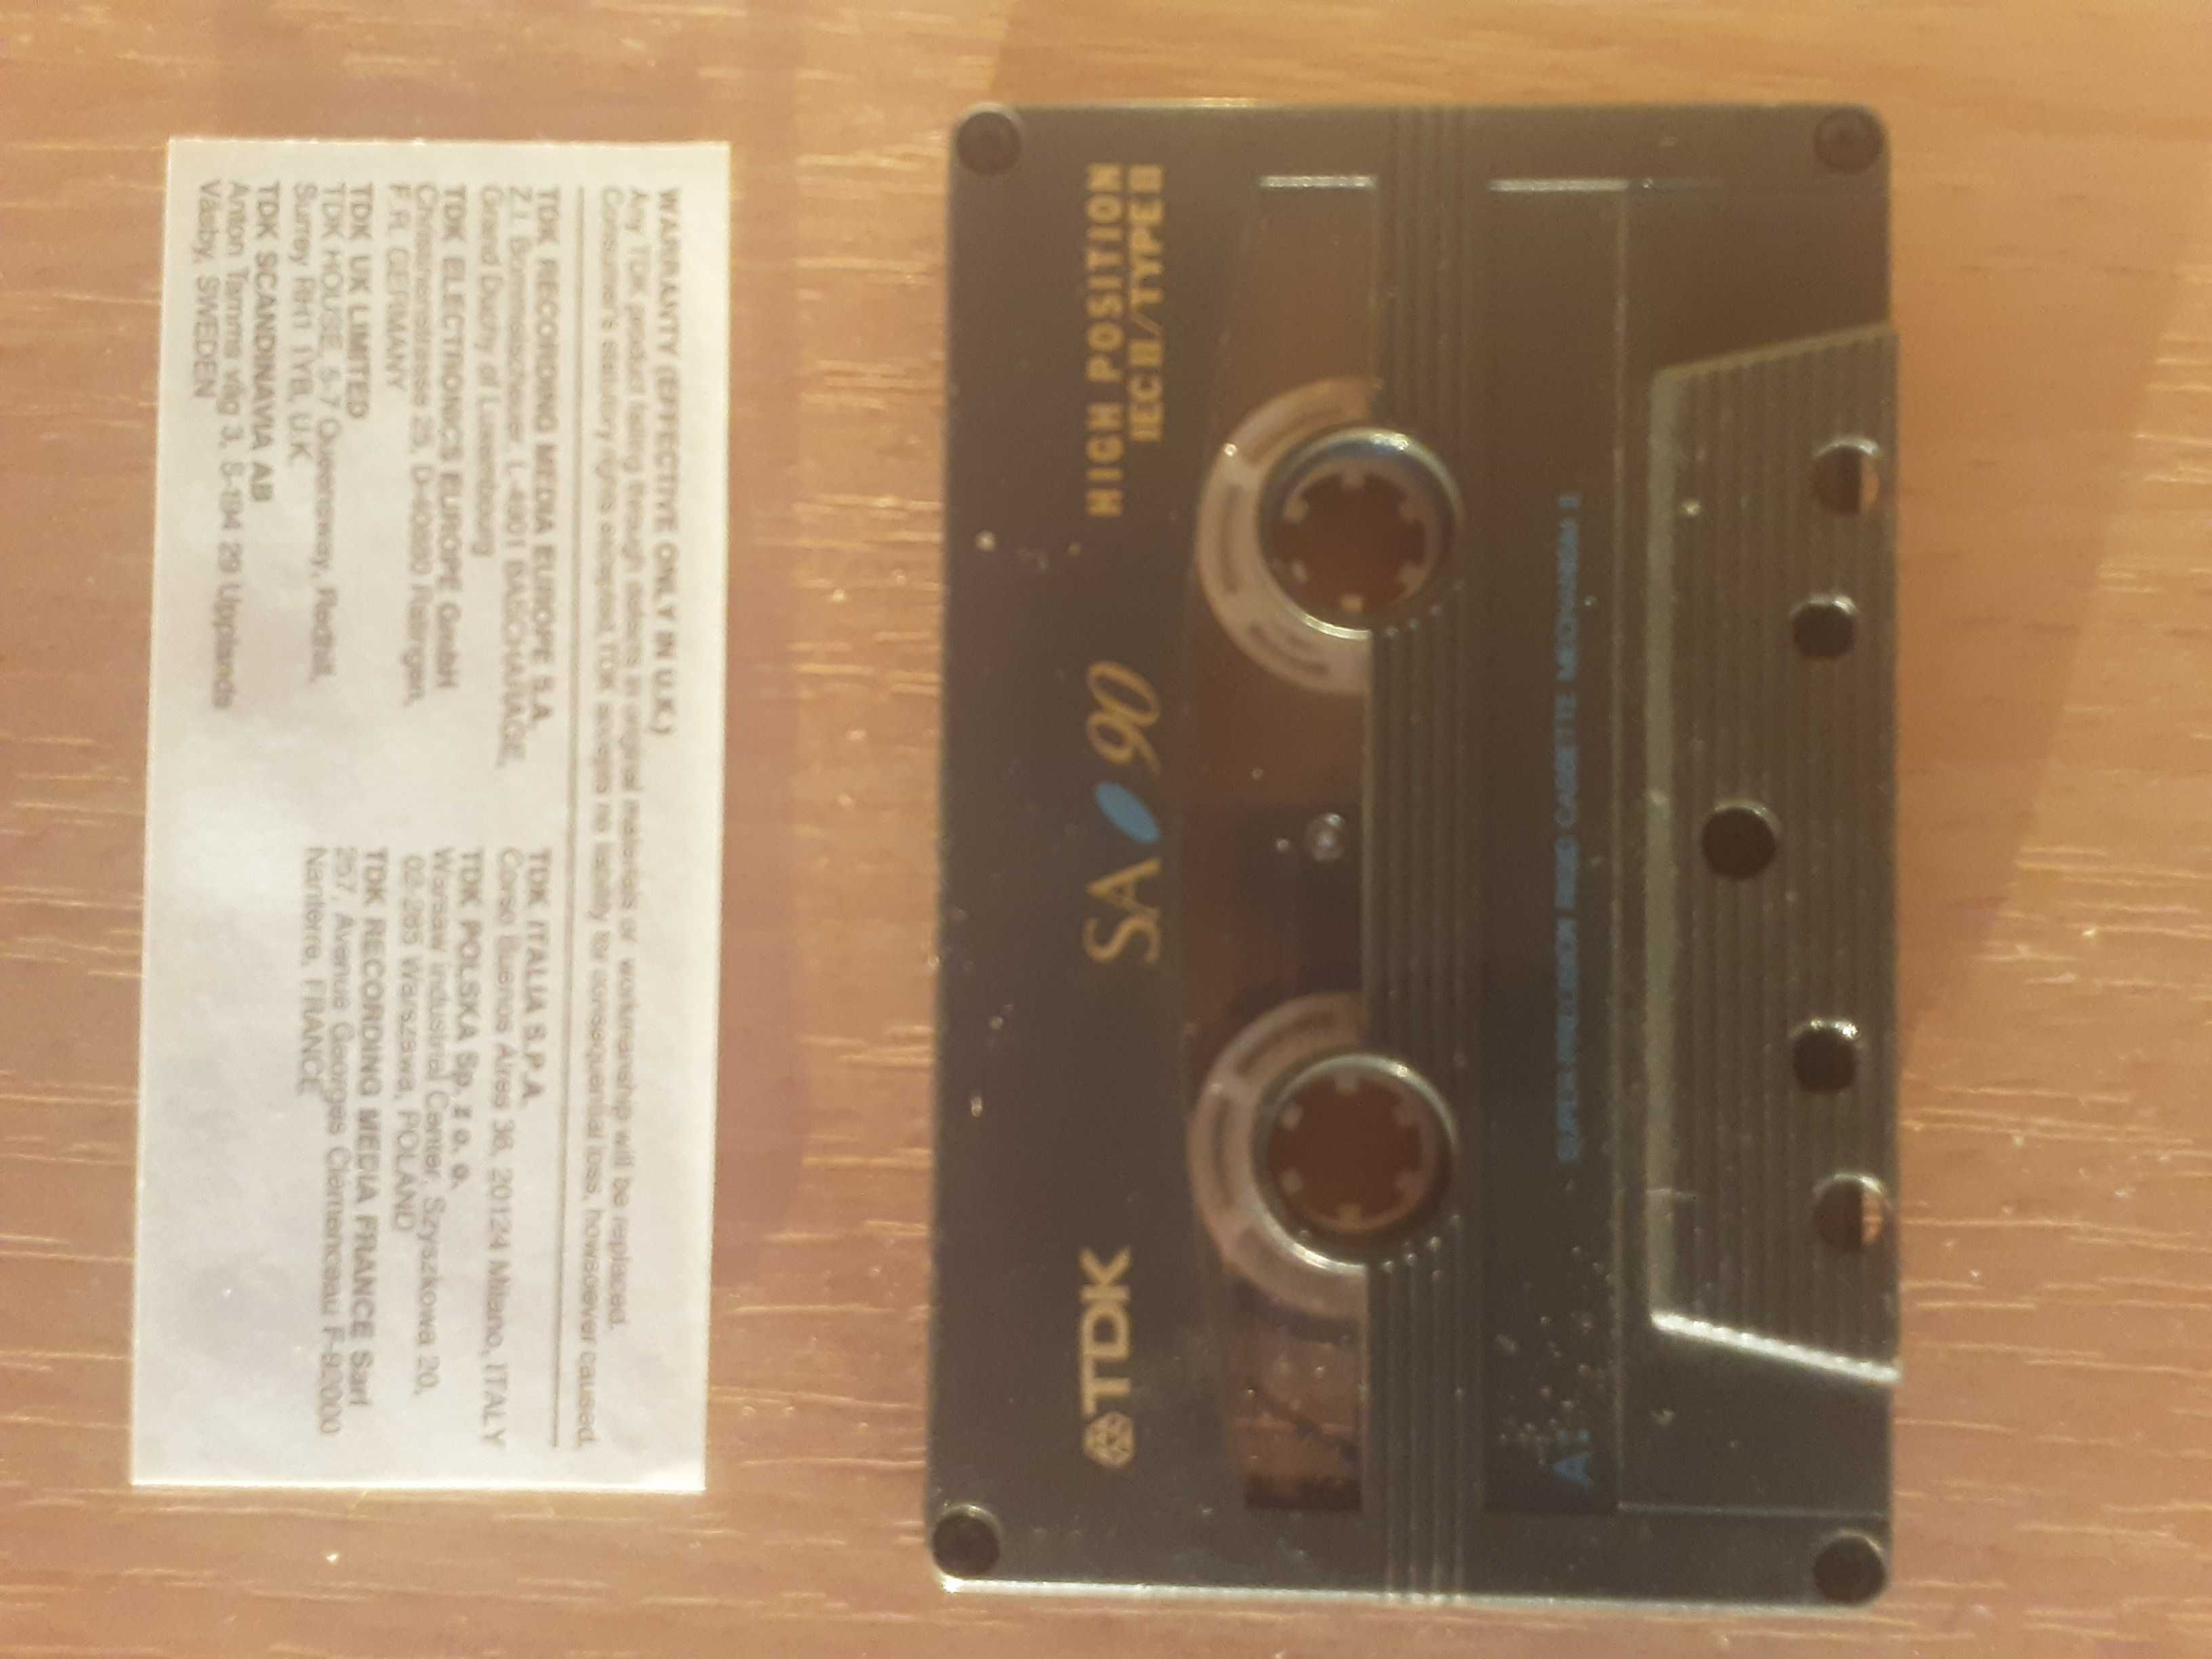 TDK SA 90 - kaseta chrom. z lat '94-97, wkładka i naklejki bez zapisów